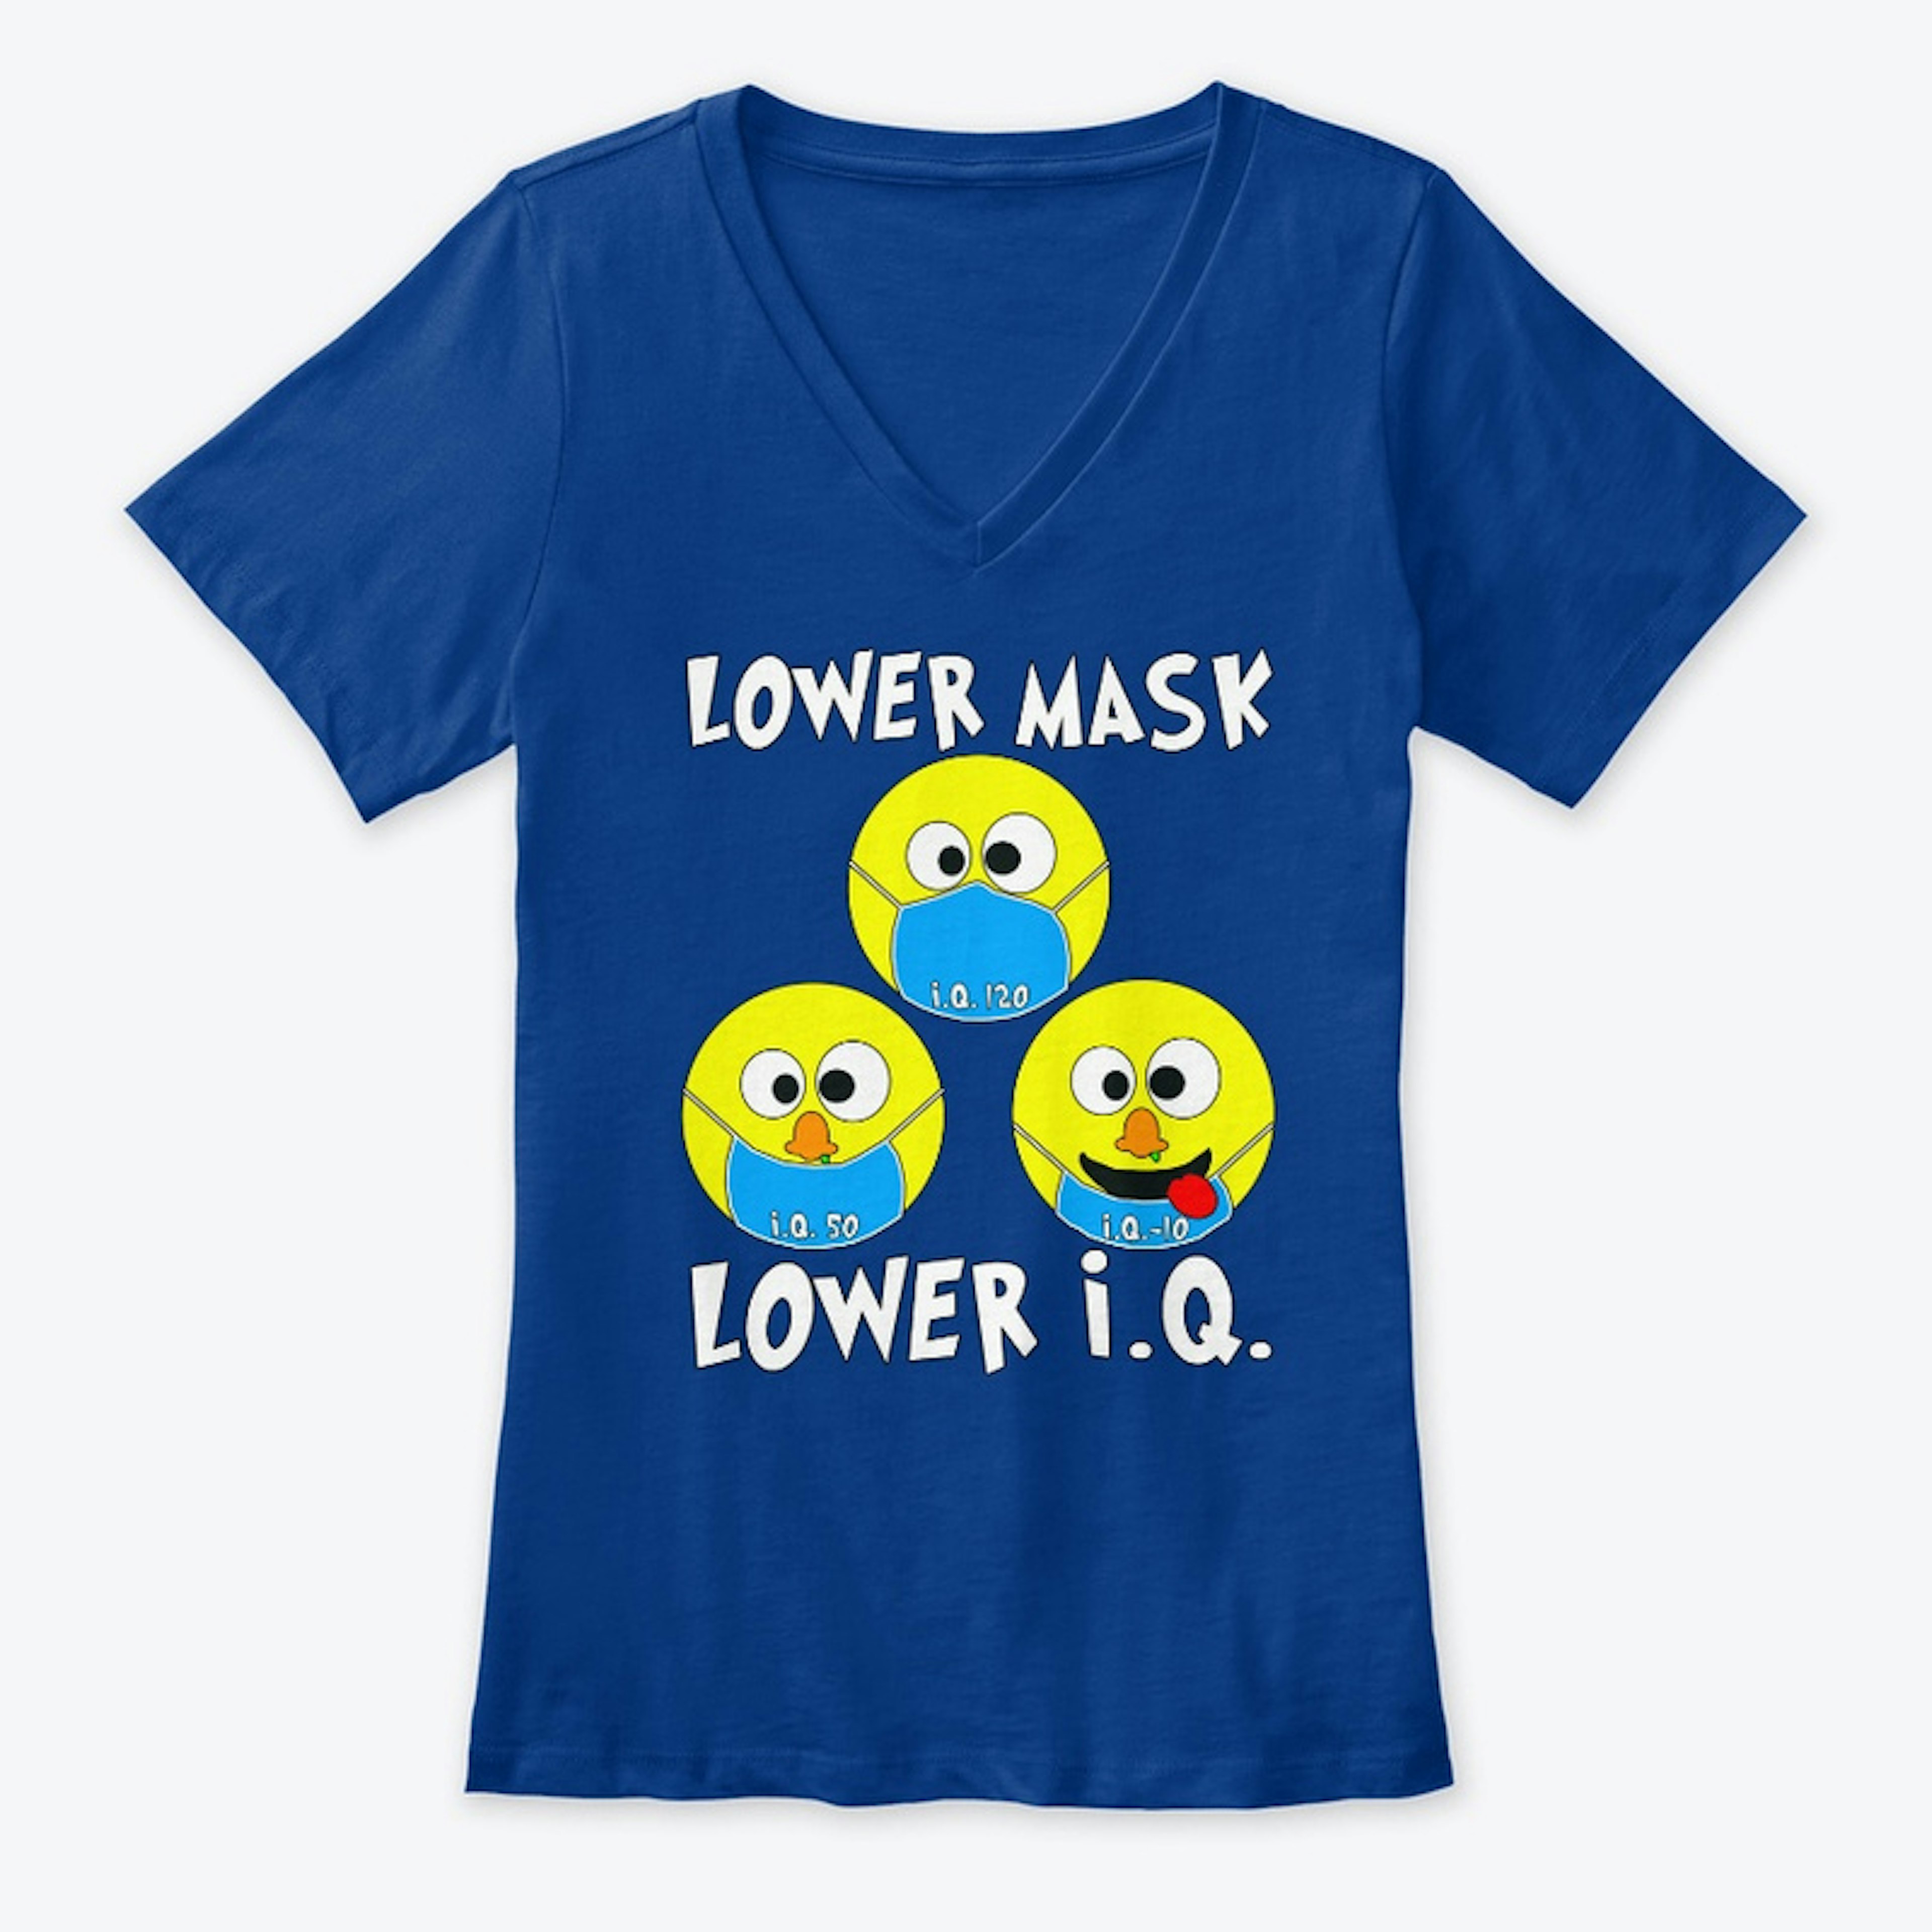 Lower Mask = Lower I.Q.